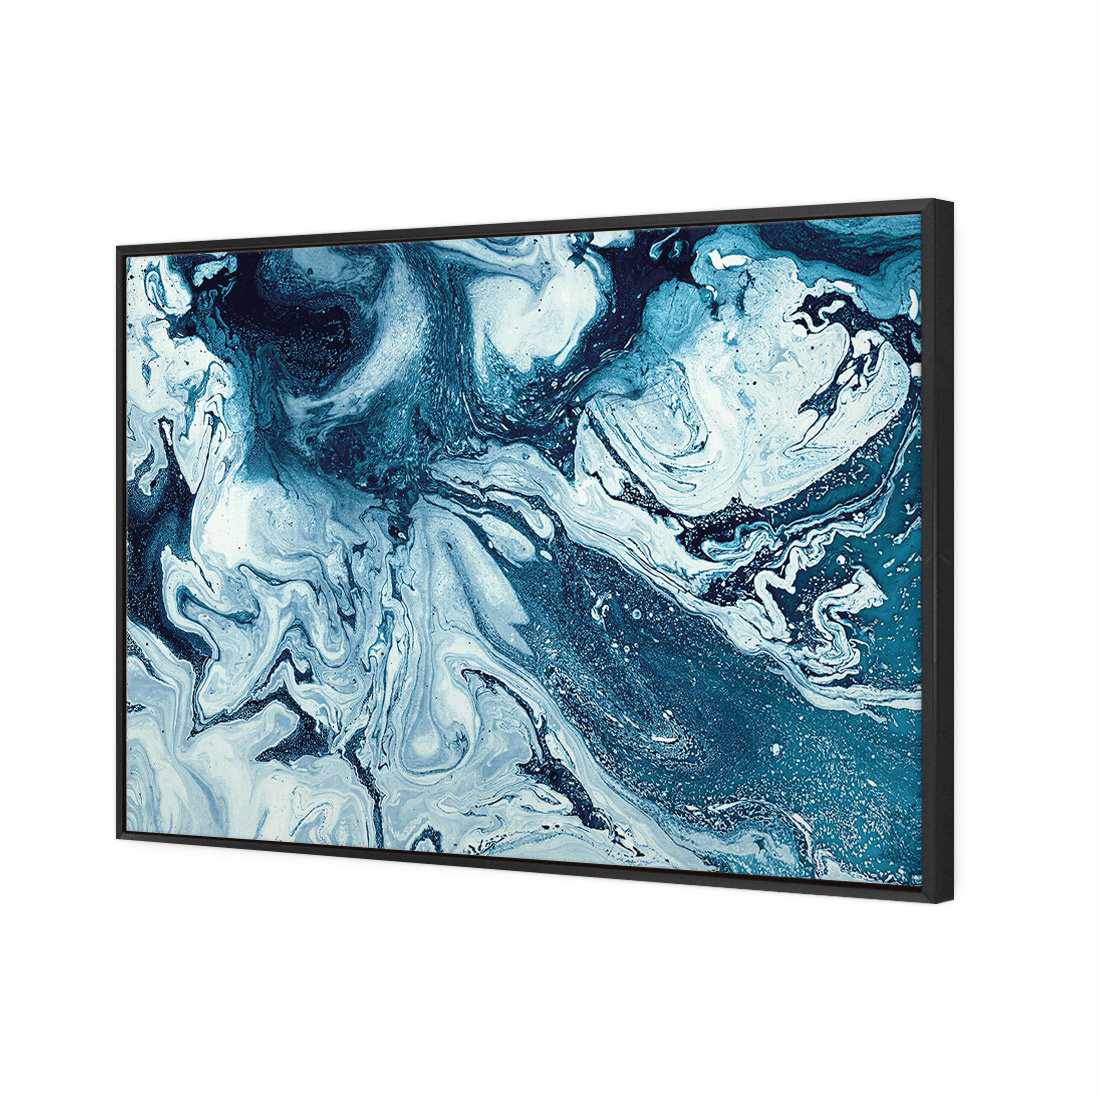 Liquified, Deep Blue Canvas Art-Canvas-Wall Art Designs-45x30cm-Canvas - Black Frame-Wall Art Designs